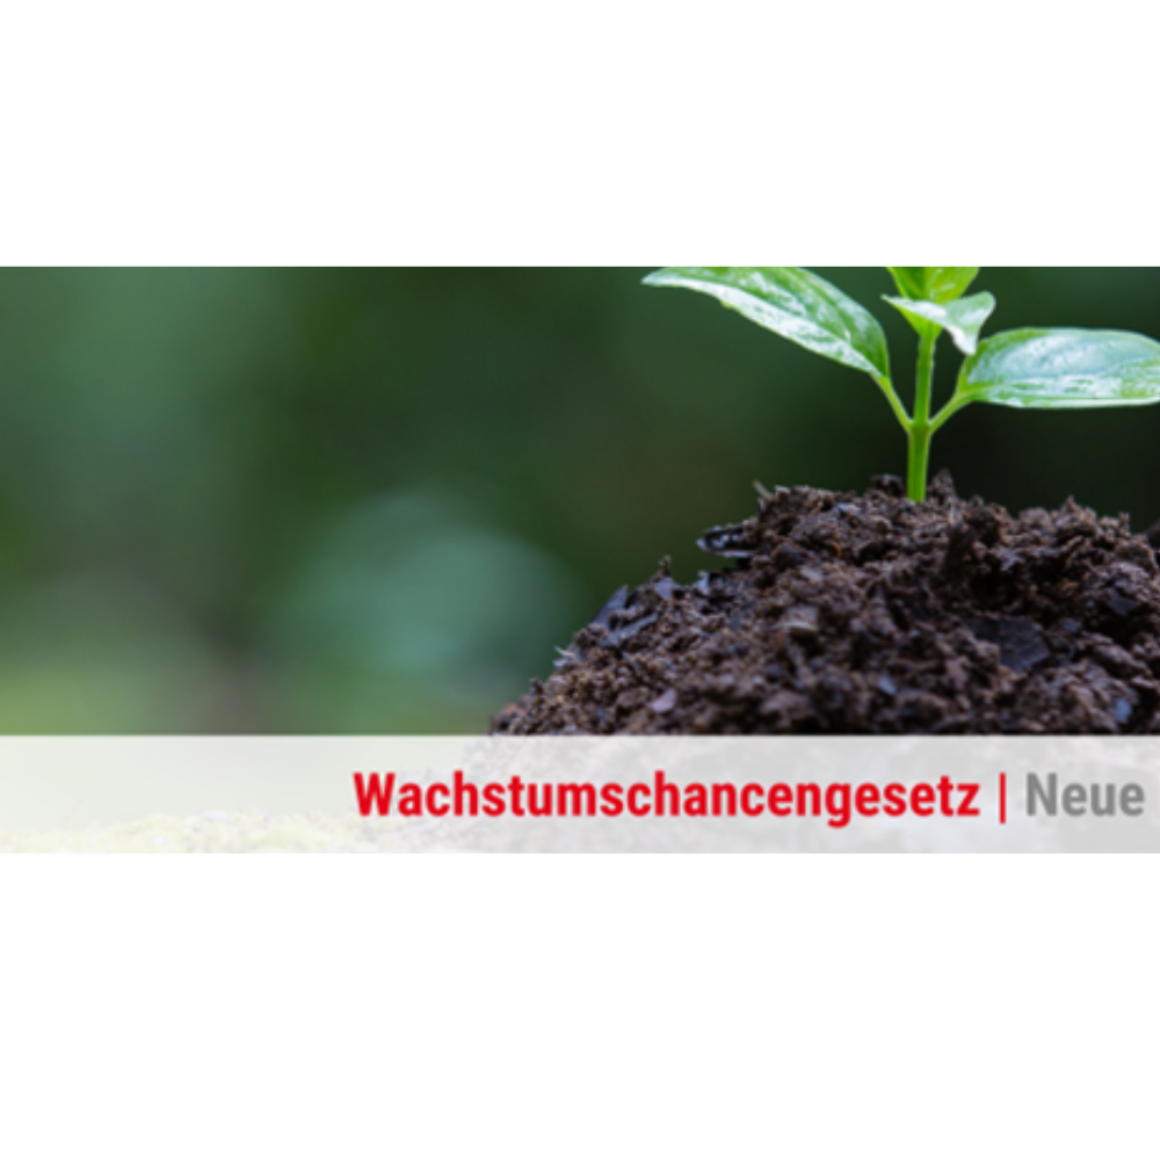 BVMW Mittelrhein zum Wachstumschancengesetz